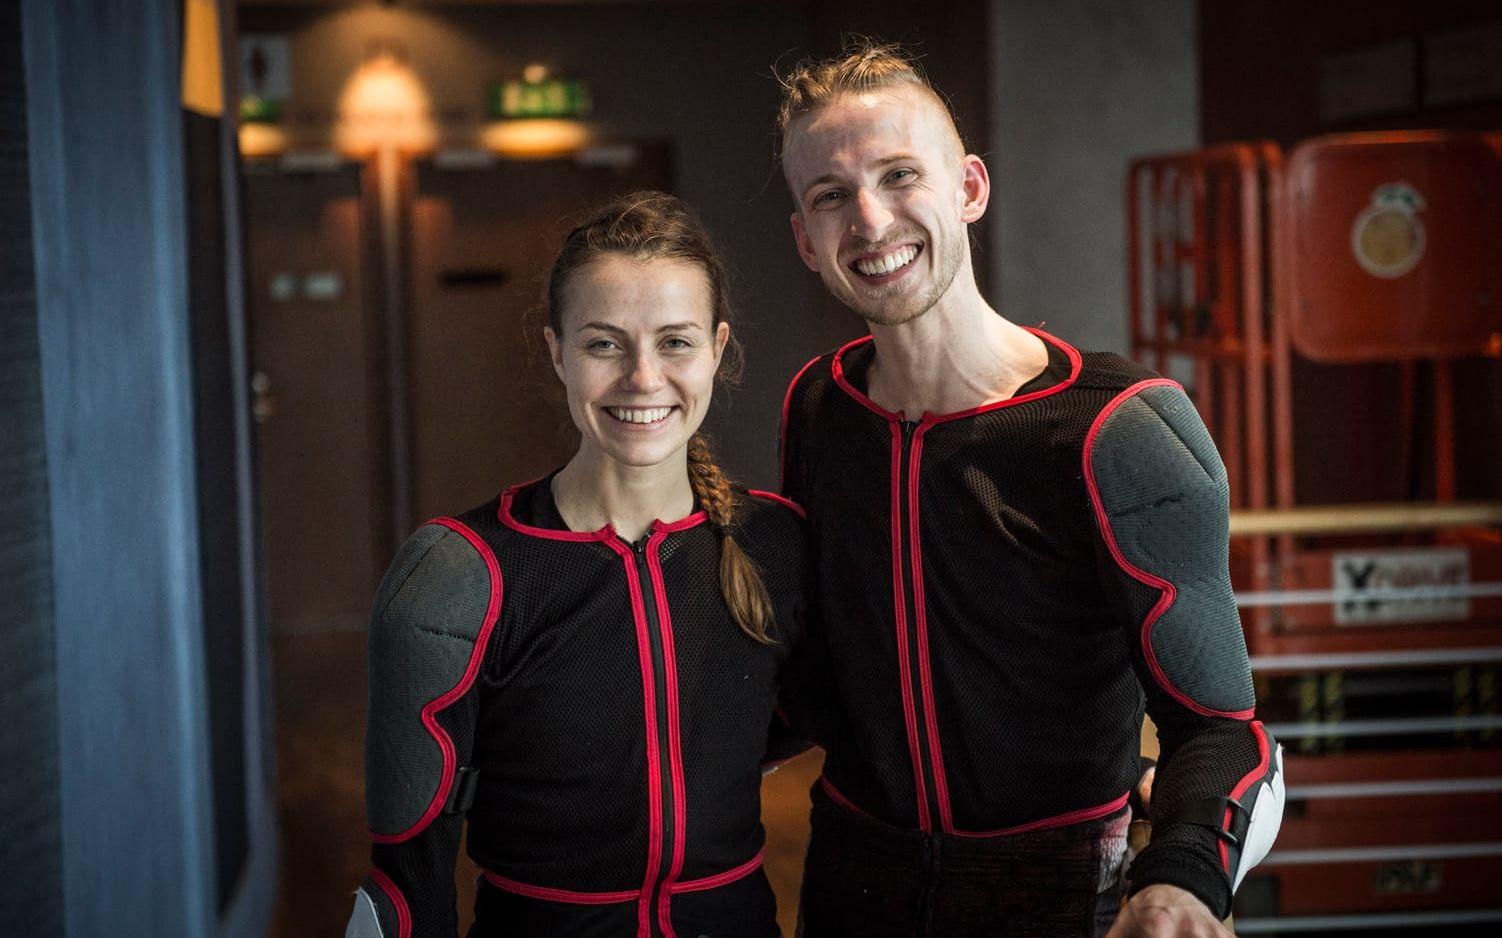 Emilia Gisladotti och Duncan Schultz är två av de sexton dansarna. Bild: Olof Ohlsson